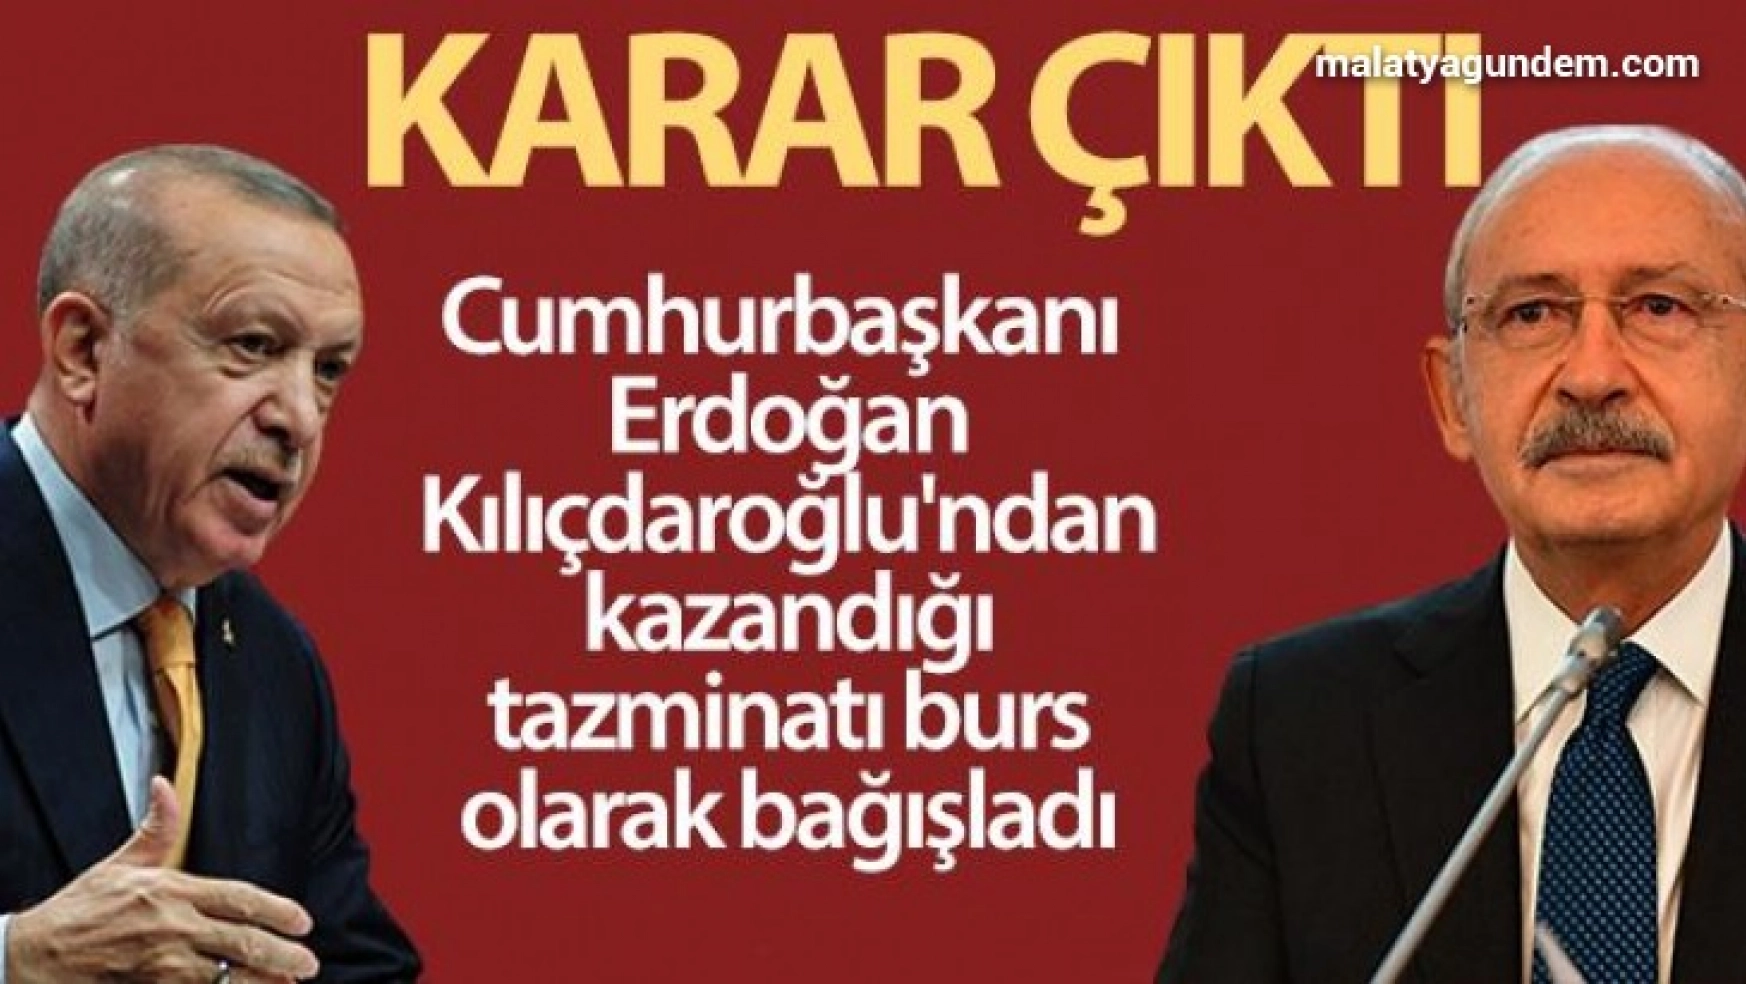 Cumhurbaşkanı Erdoğan, Kılıçdaroğlu'ndan kazandığı tazminatı burs olarak bağışladı